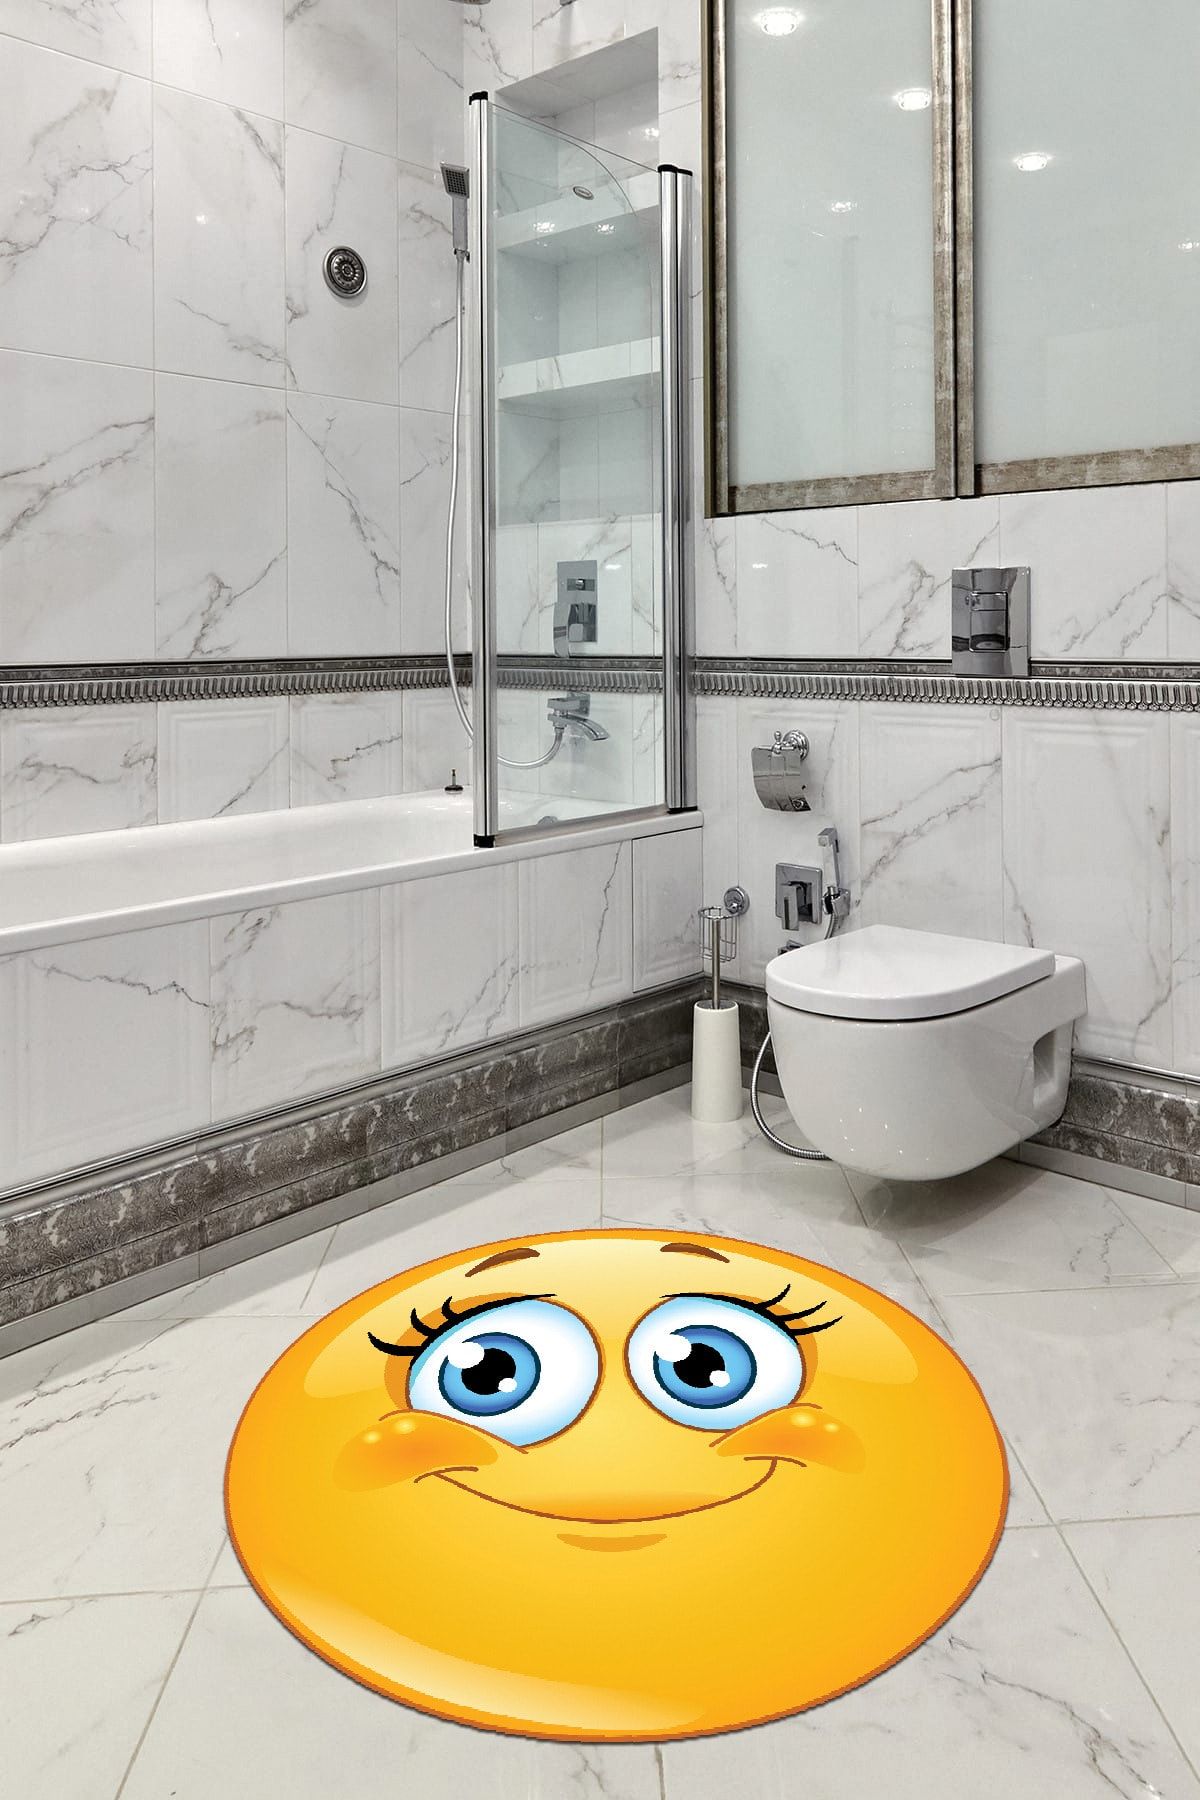 RugViva Gülen Yüz Smiley Kaymaz Tabanlı Banyo Paspası Daire 160 x 160 cm